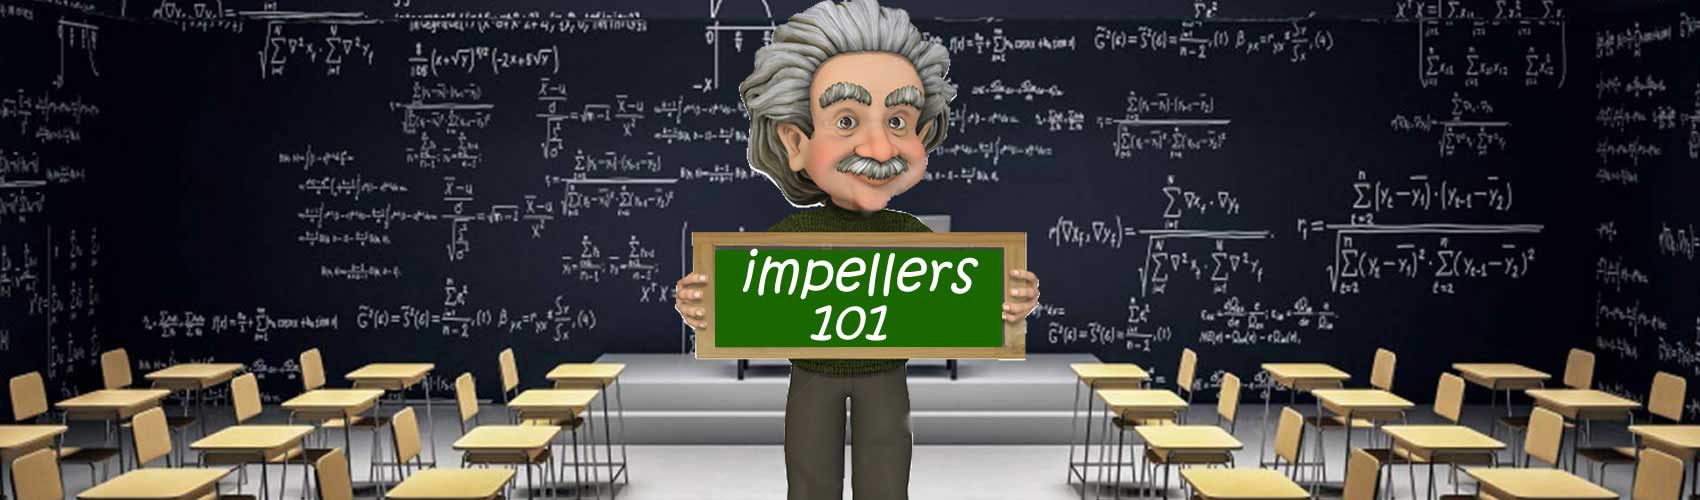 impellers-101-leading-edge